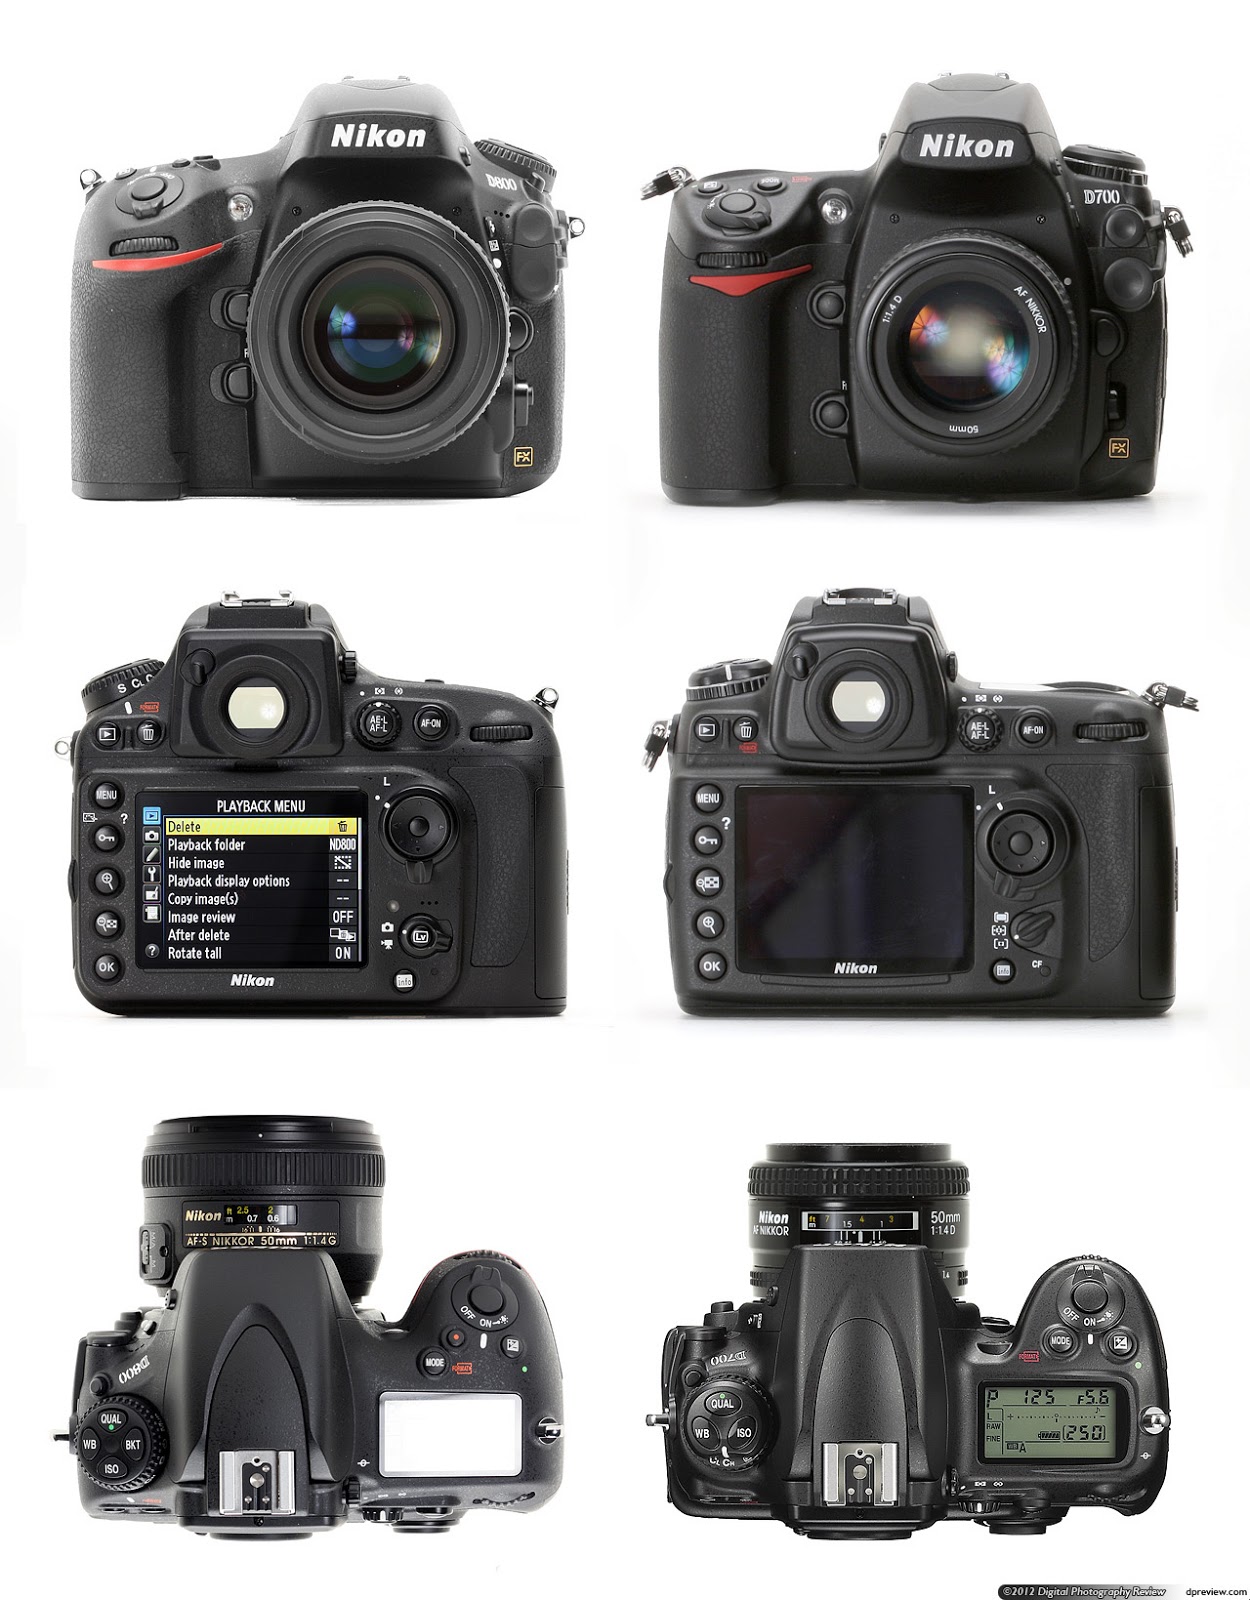 313kB, Informasi: Harga Kamera Nikon D800/D800 E terbaru 2013 (Update ...